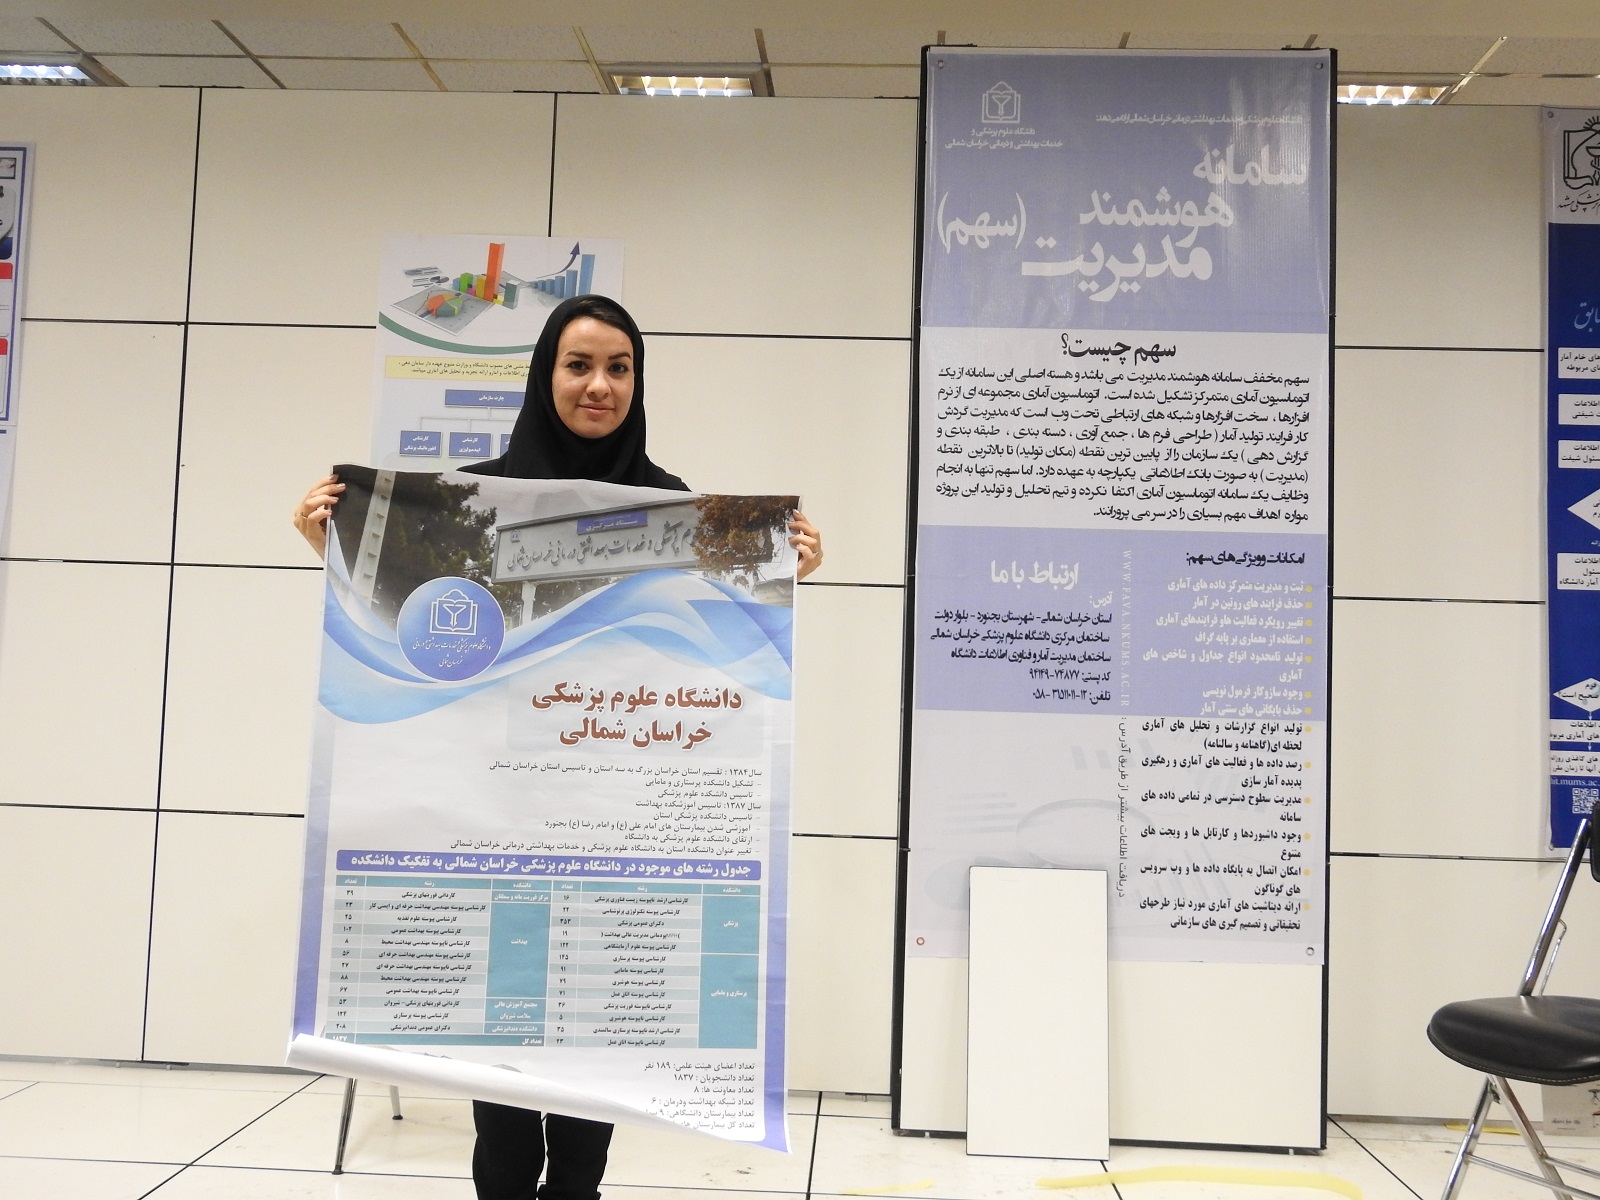 راه اندازی غرفه آمار در همایش استفاده از آمار در نظام سلامت در دانشگاه پزشکی ایران